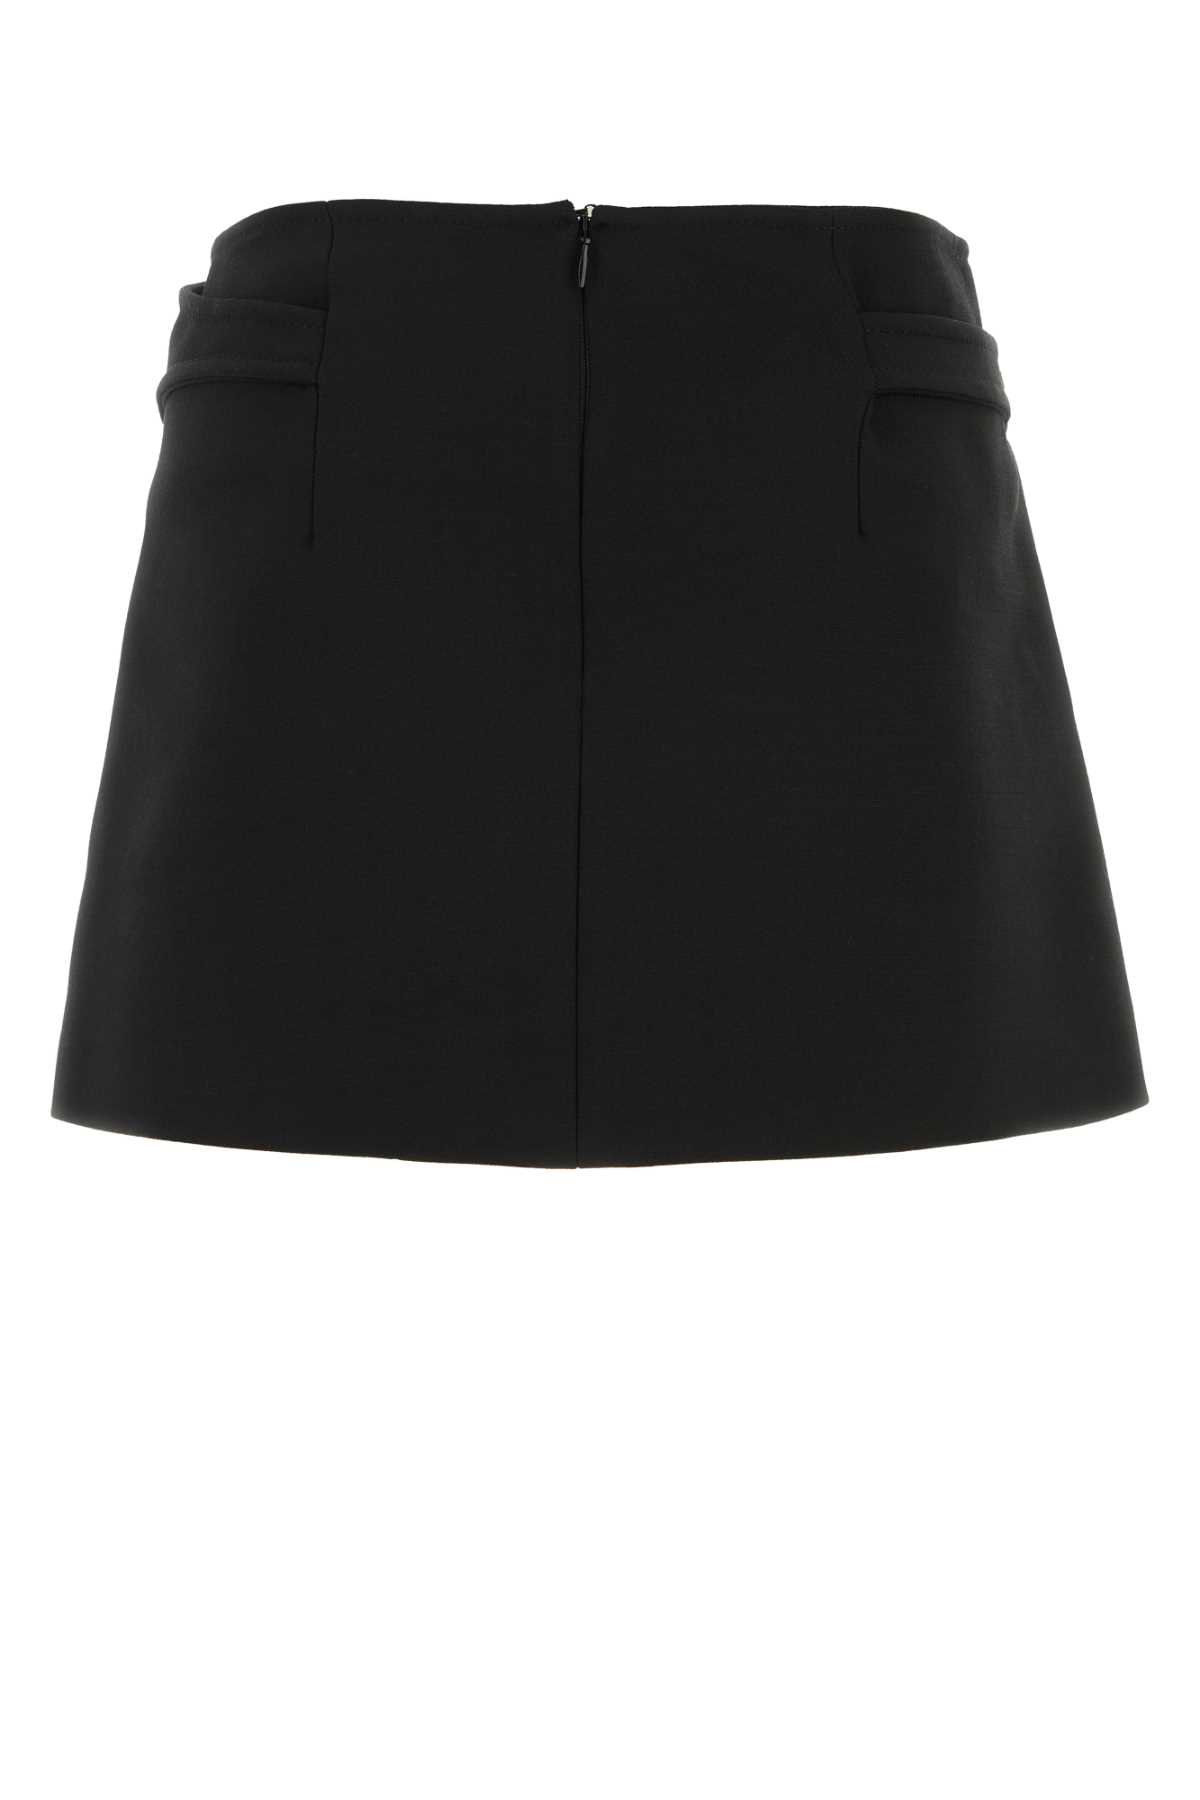 Shop Dion Lee Black Stretch Twill Mini Skirt